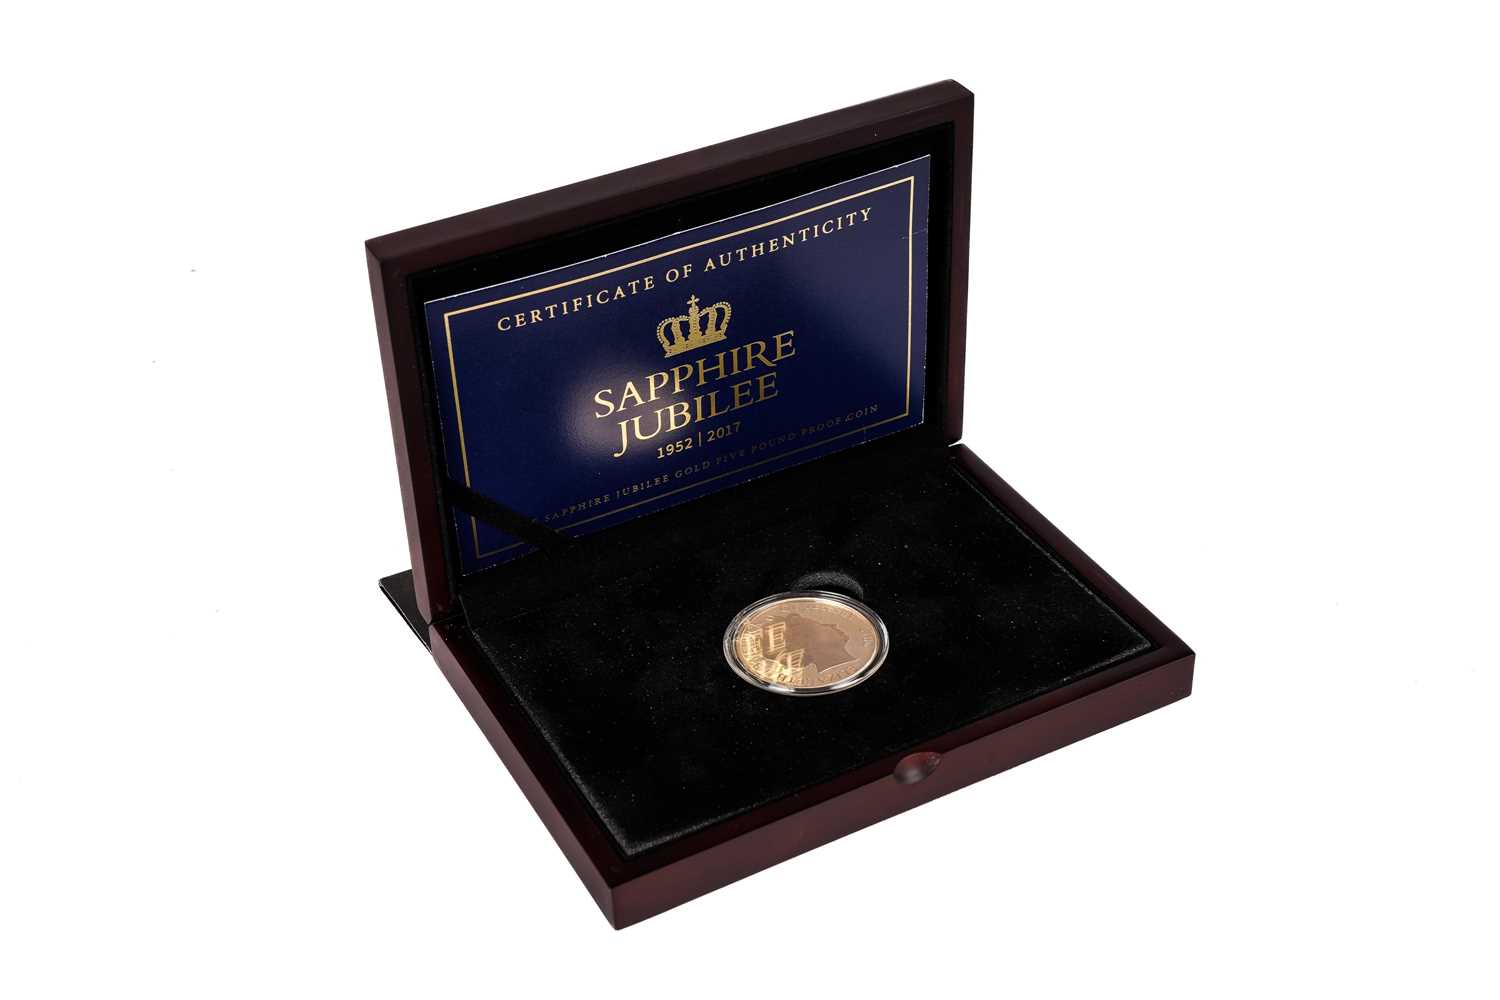 246 - A Queen Elizabeth II Sapphire Jubilee Jersey £5 gold proof coin